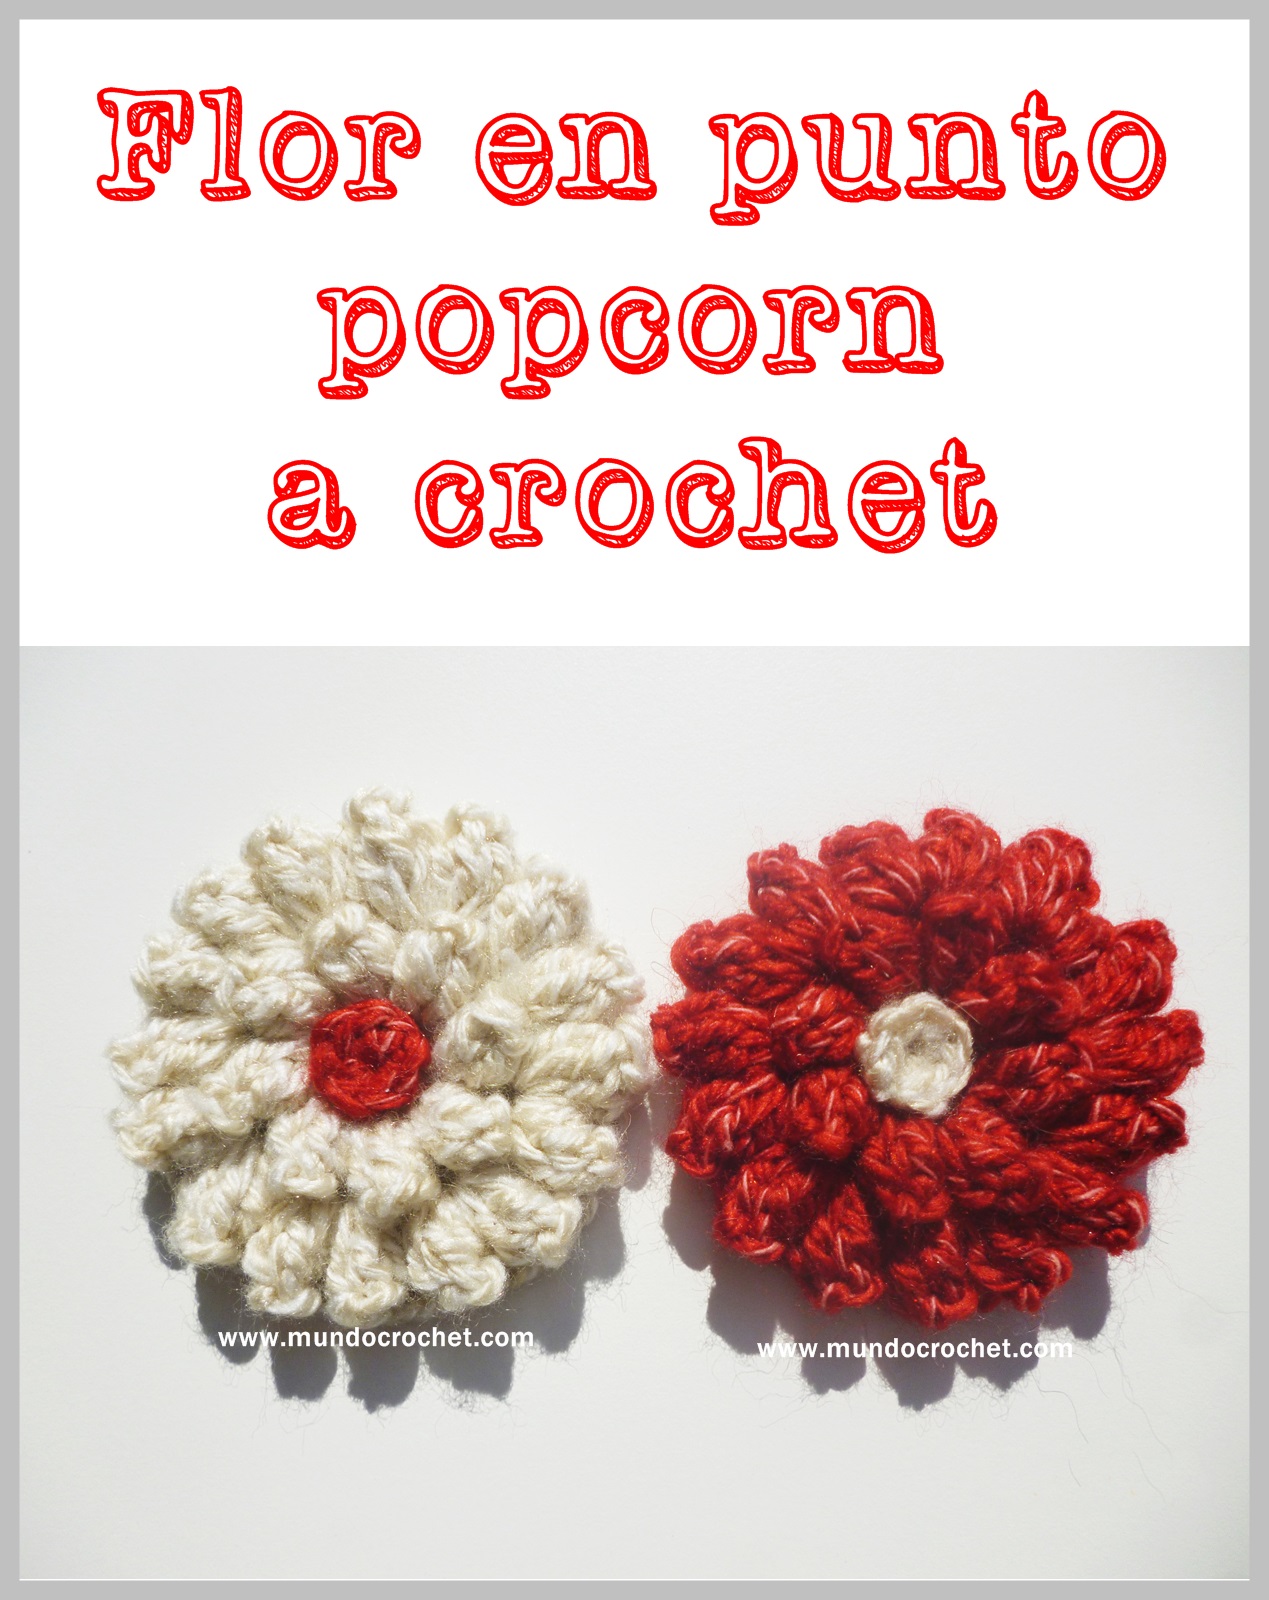 Patrón: flor en punto popcorn a crochet o ganchillo - Mundo Crochet